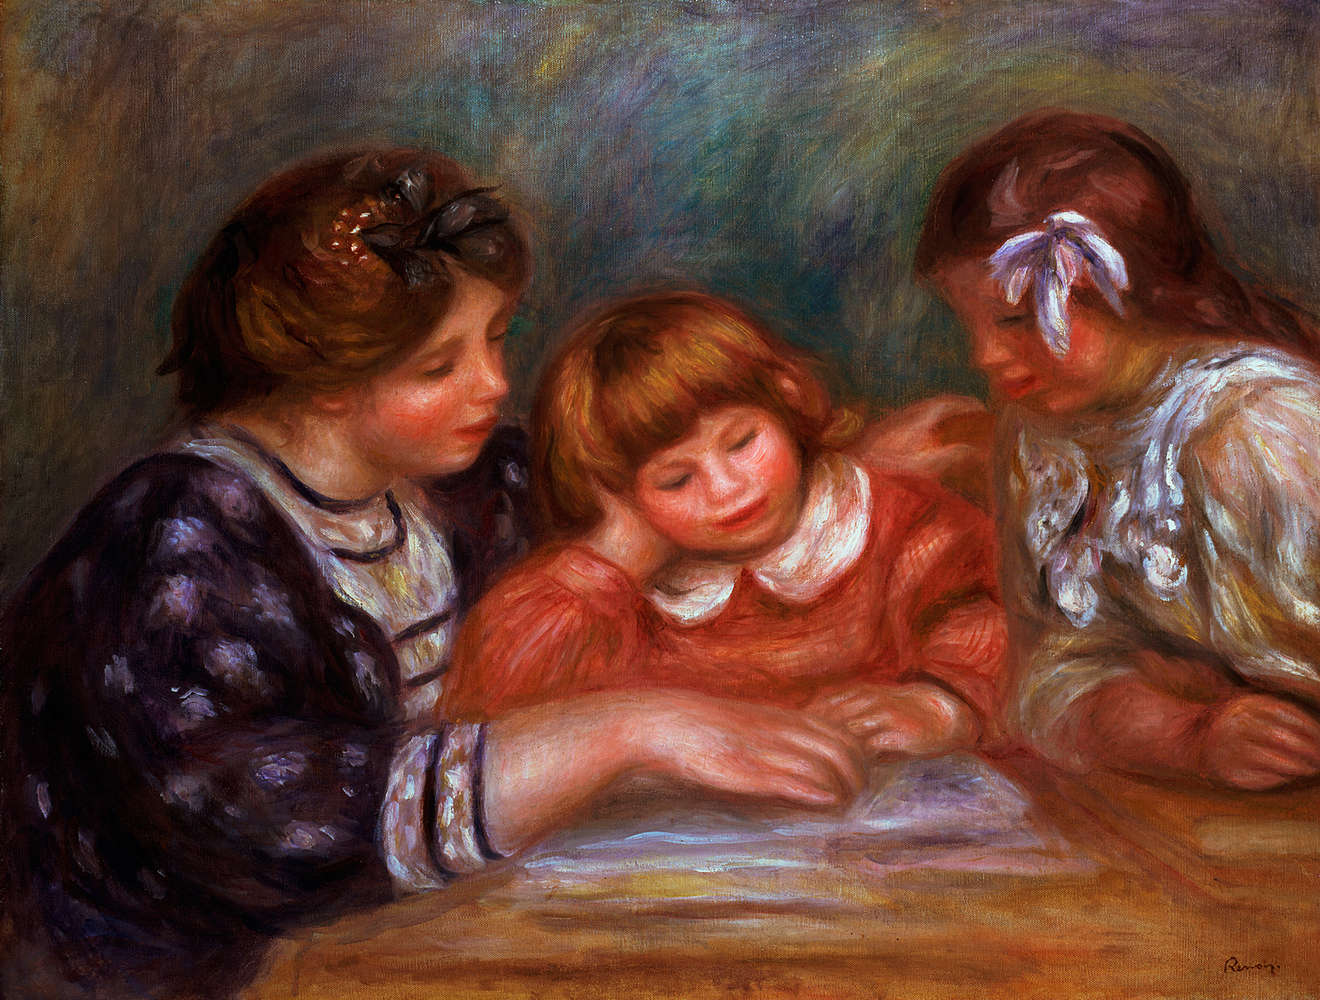             De Les" muurschildering van Pierre Auguste Renoir
        